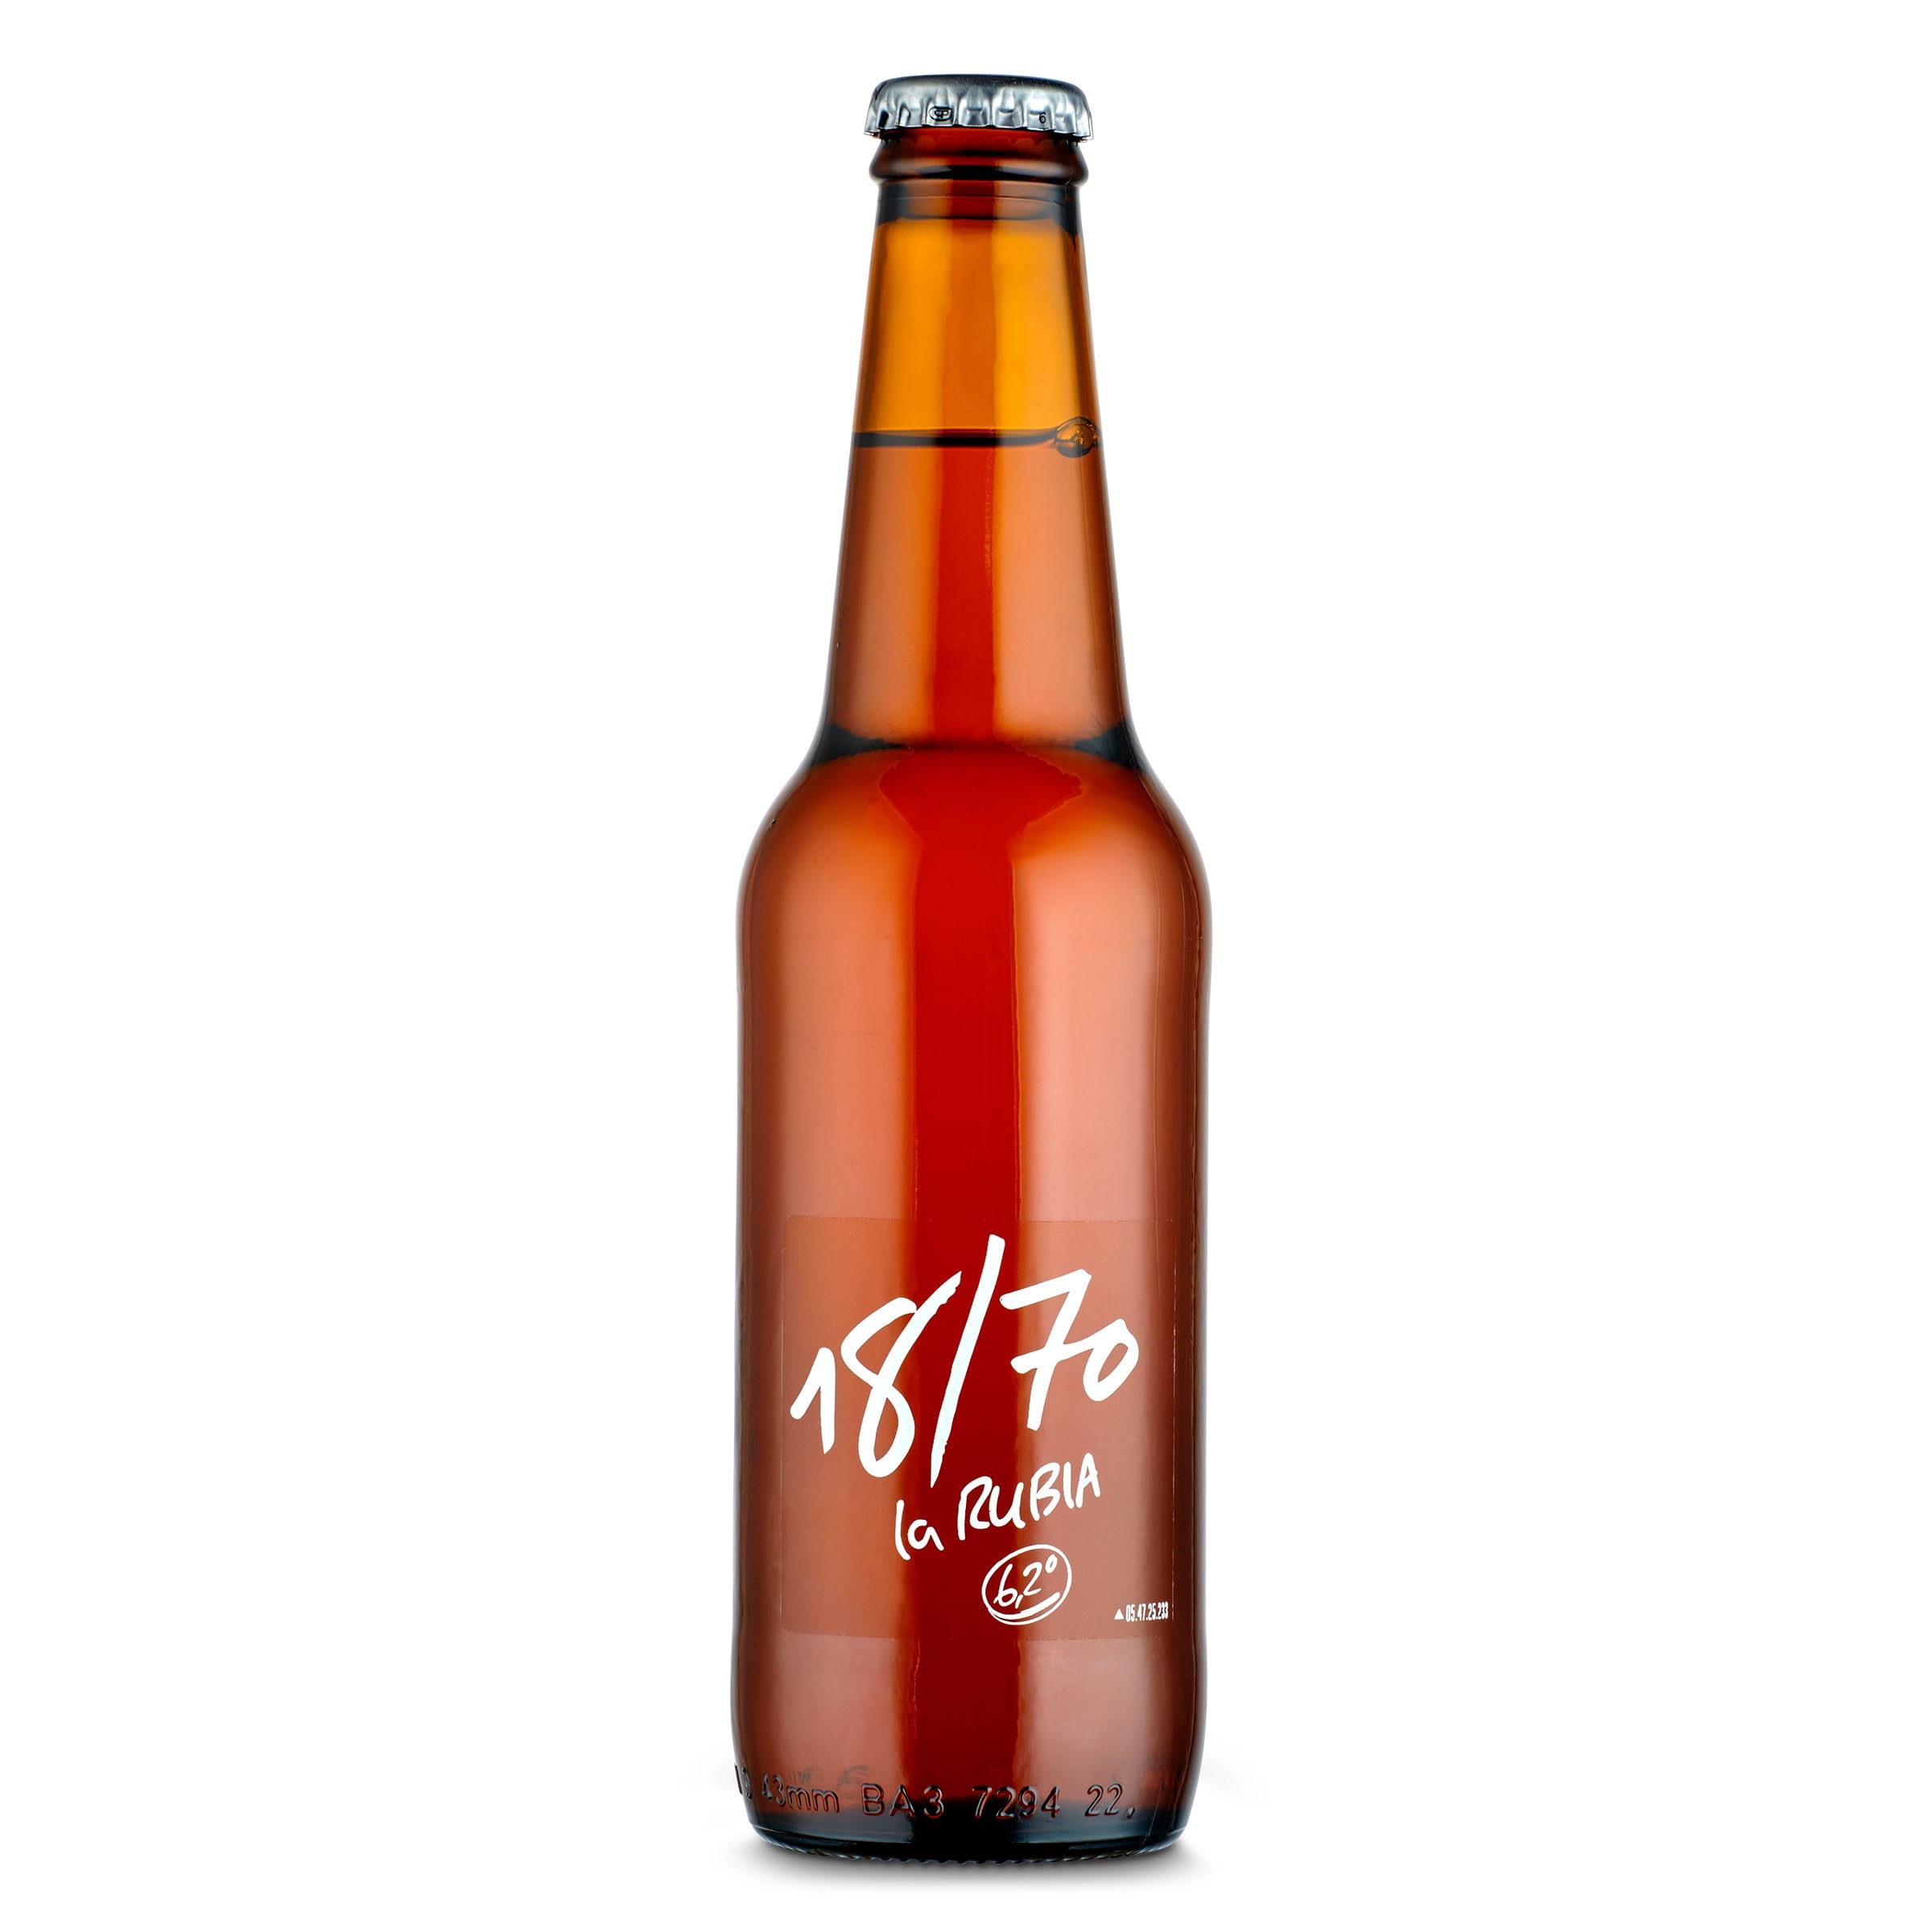 Cerveza especial 18/70 La rubia botella 33 cl - Supermercados DIA